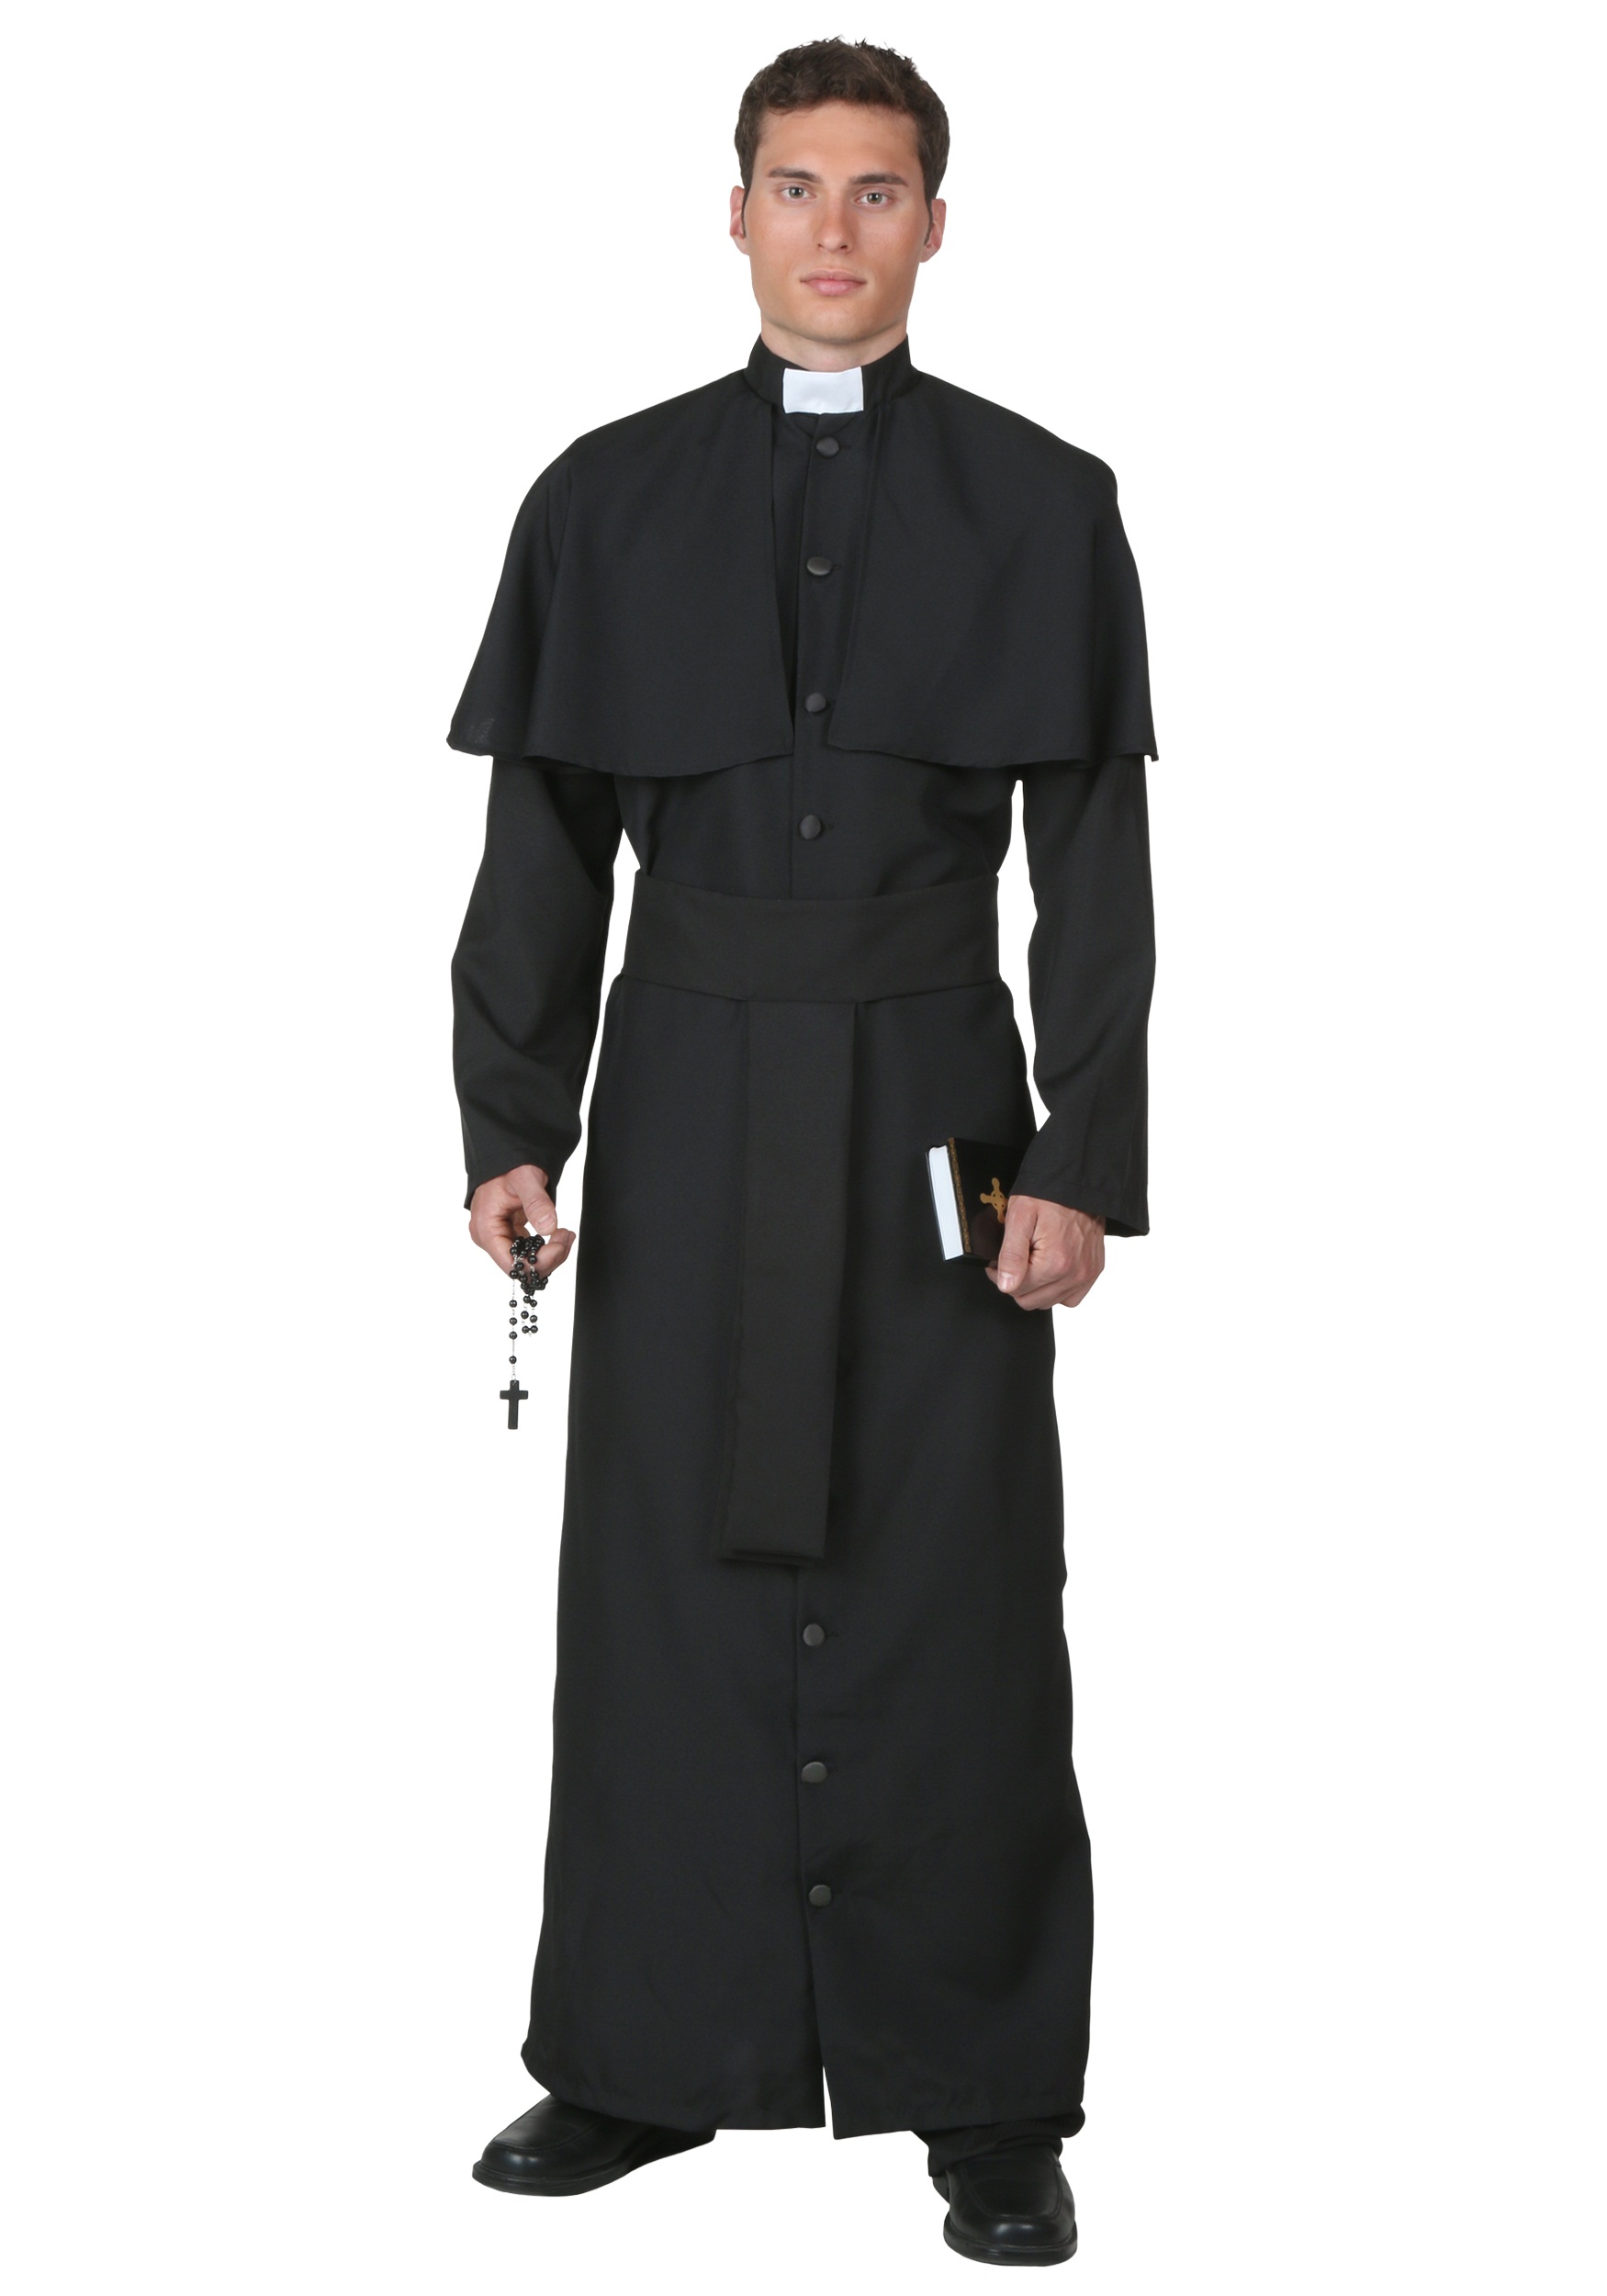 Men’s Deluxe Priest Costume